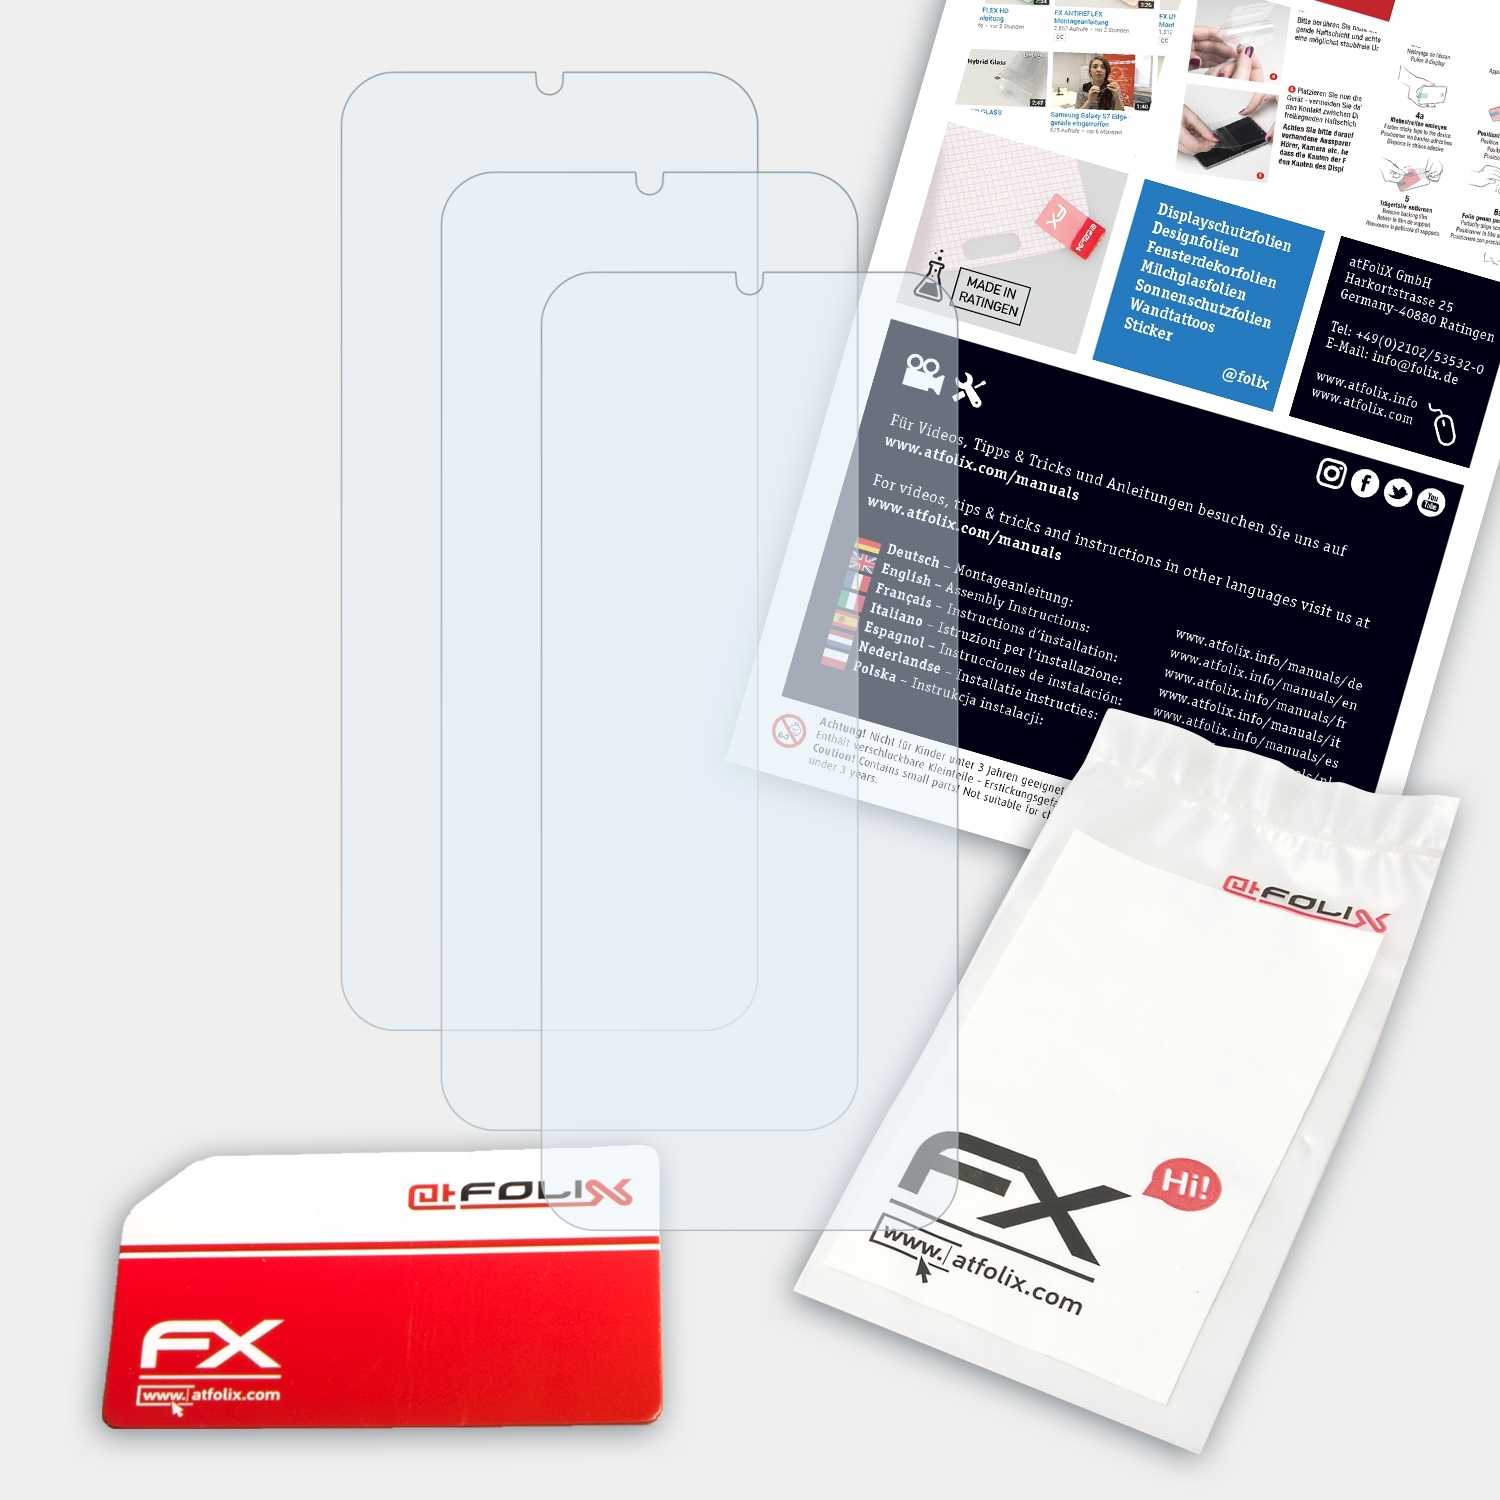 ATFOLIX 3x V10) Displayschutz(für Smart Vodafone FX-Clear